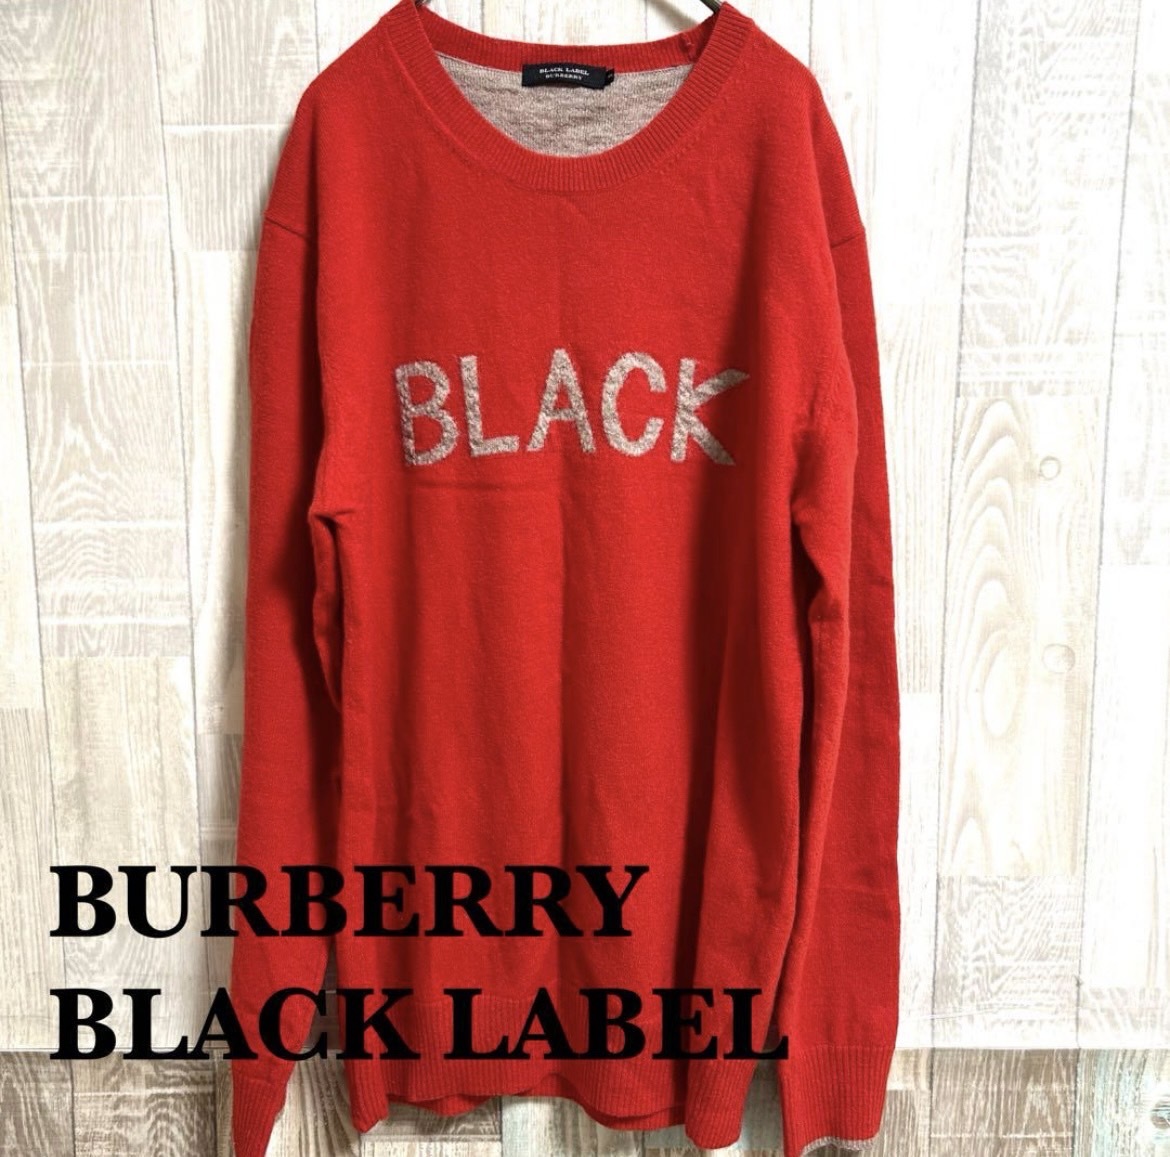 【BURBERRY BLACKLABEL】バーバリー ブラックレーベル 3 Lサイズ 相当 メンズ ニット 赤 レッド セーター 丸首 トップス きれい目_画像2